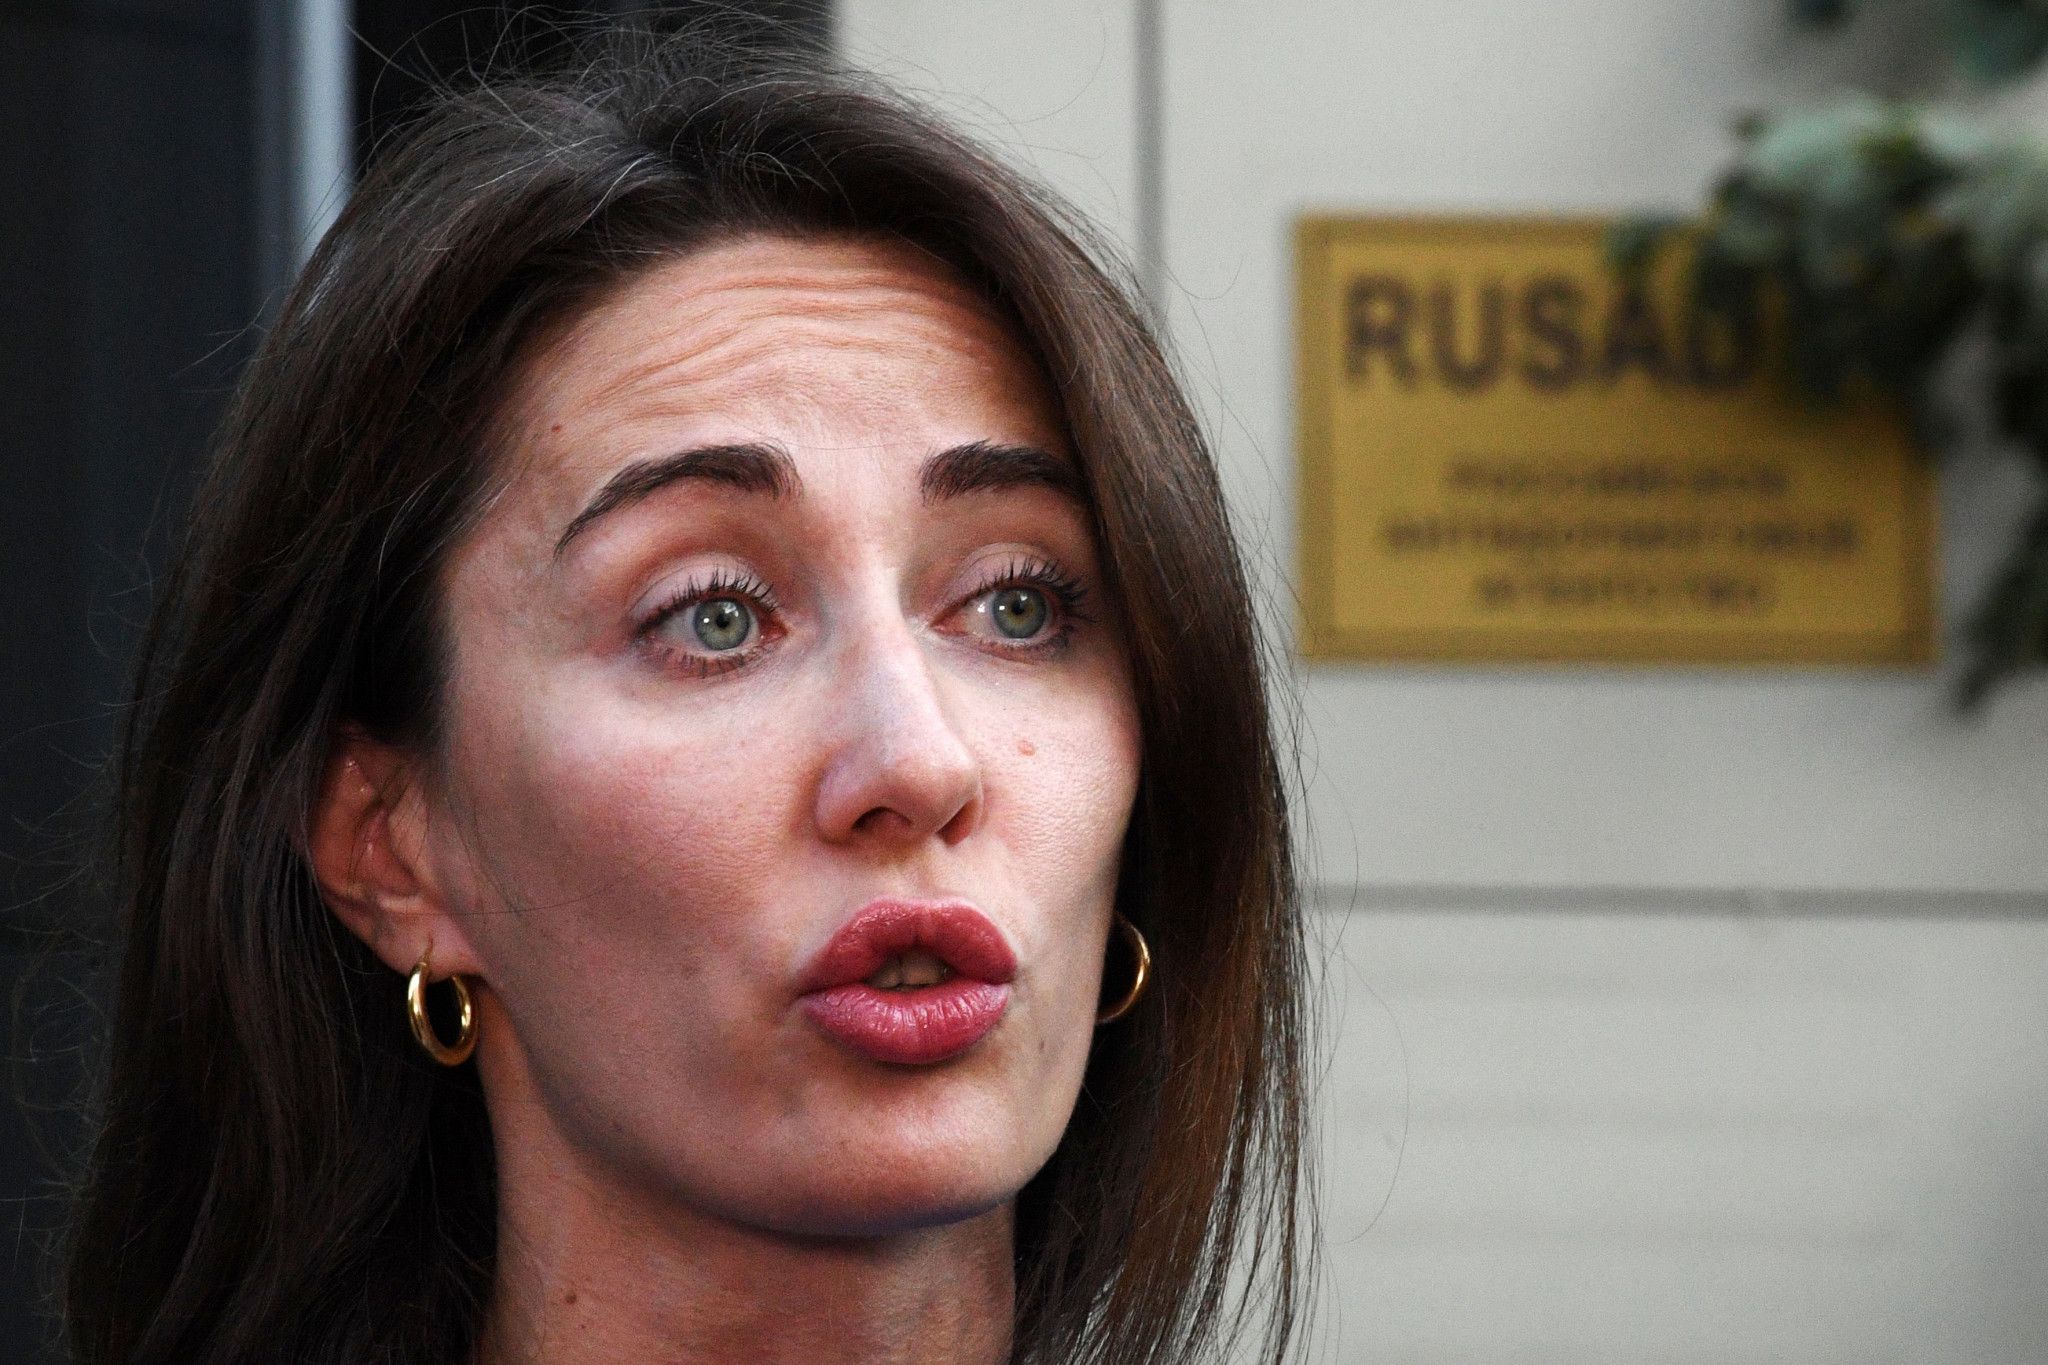 RUSADA director general Margarita Pakhnotskaya claimed 